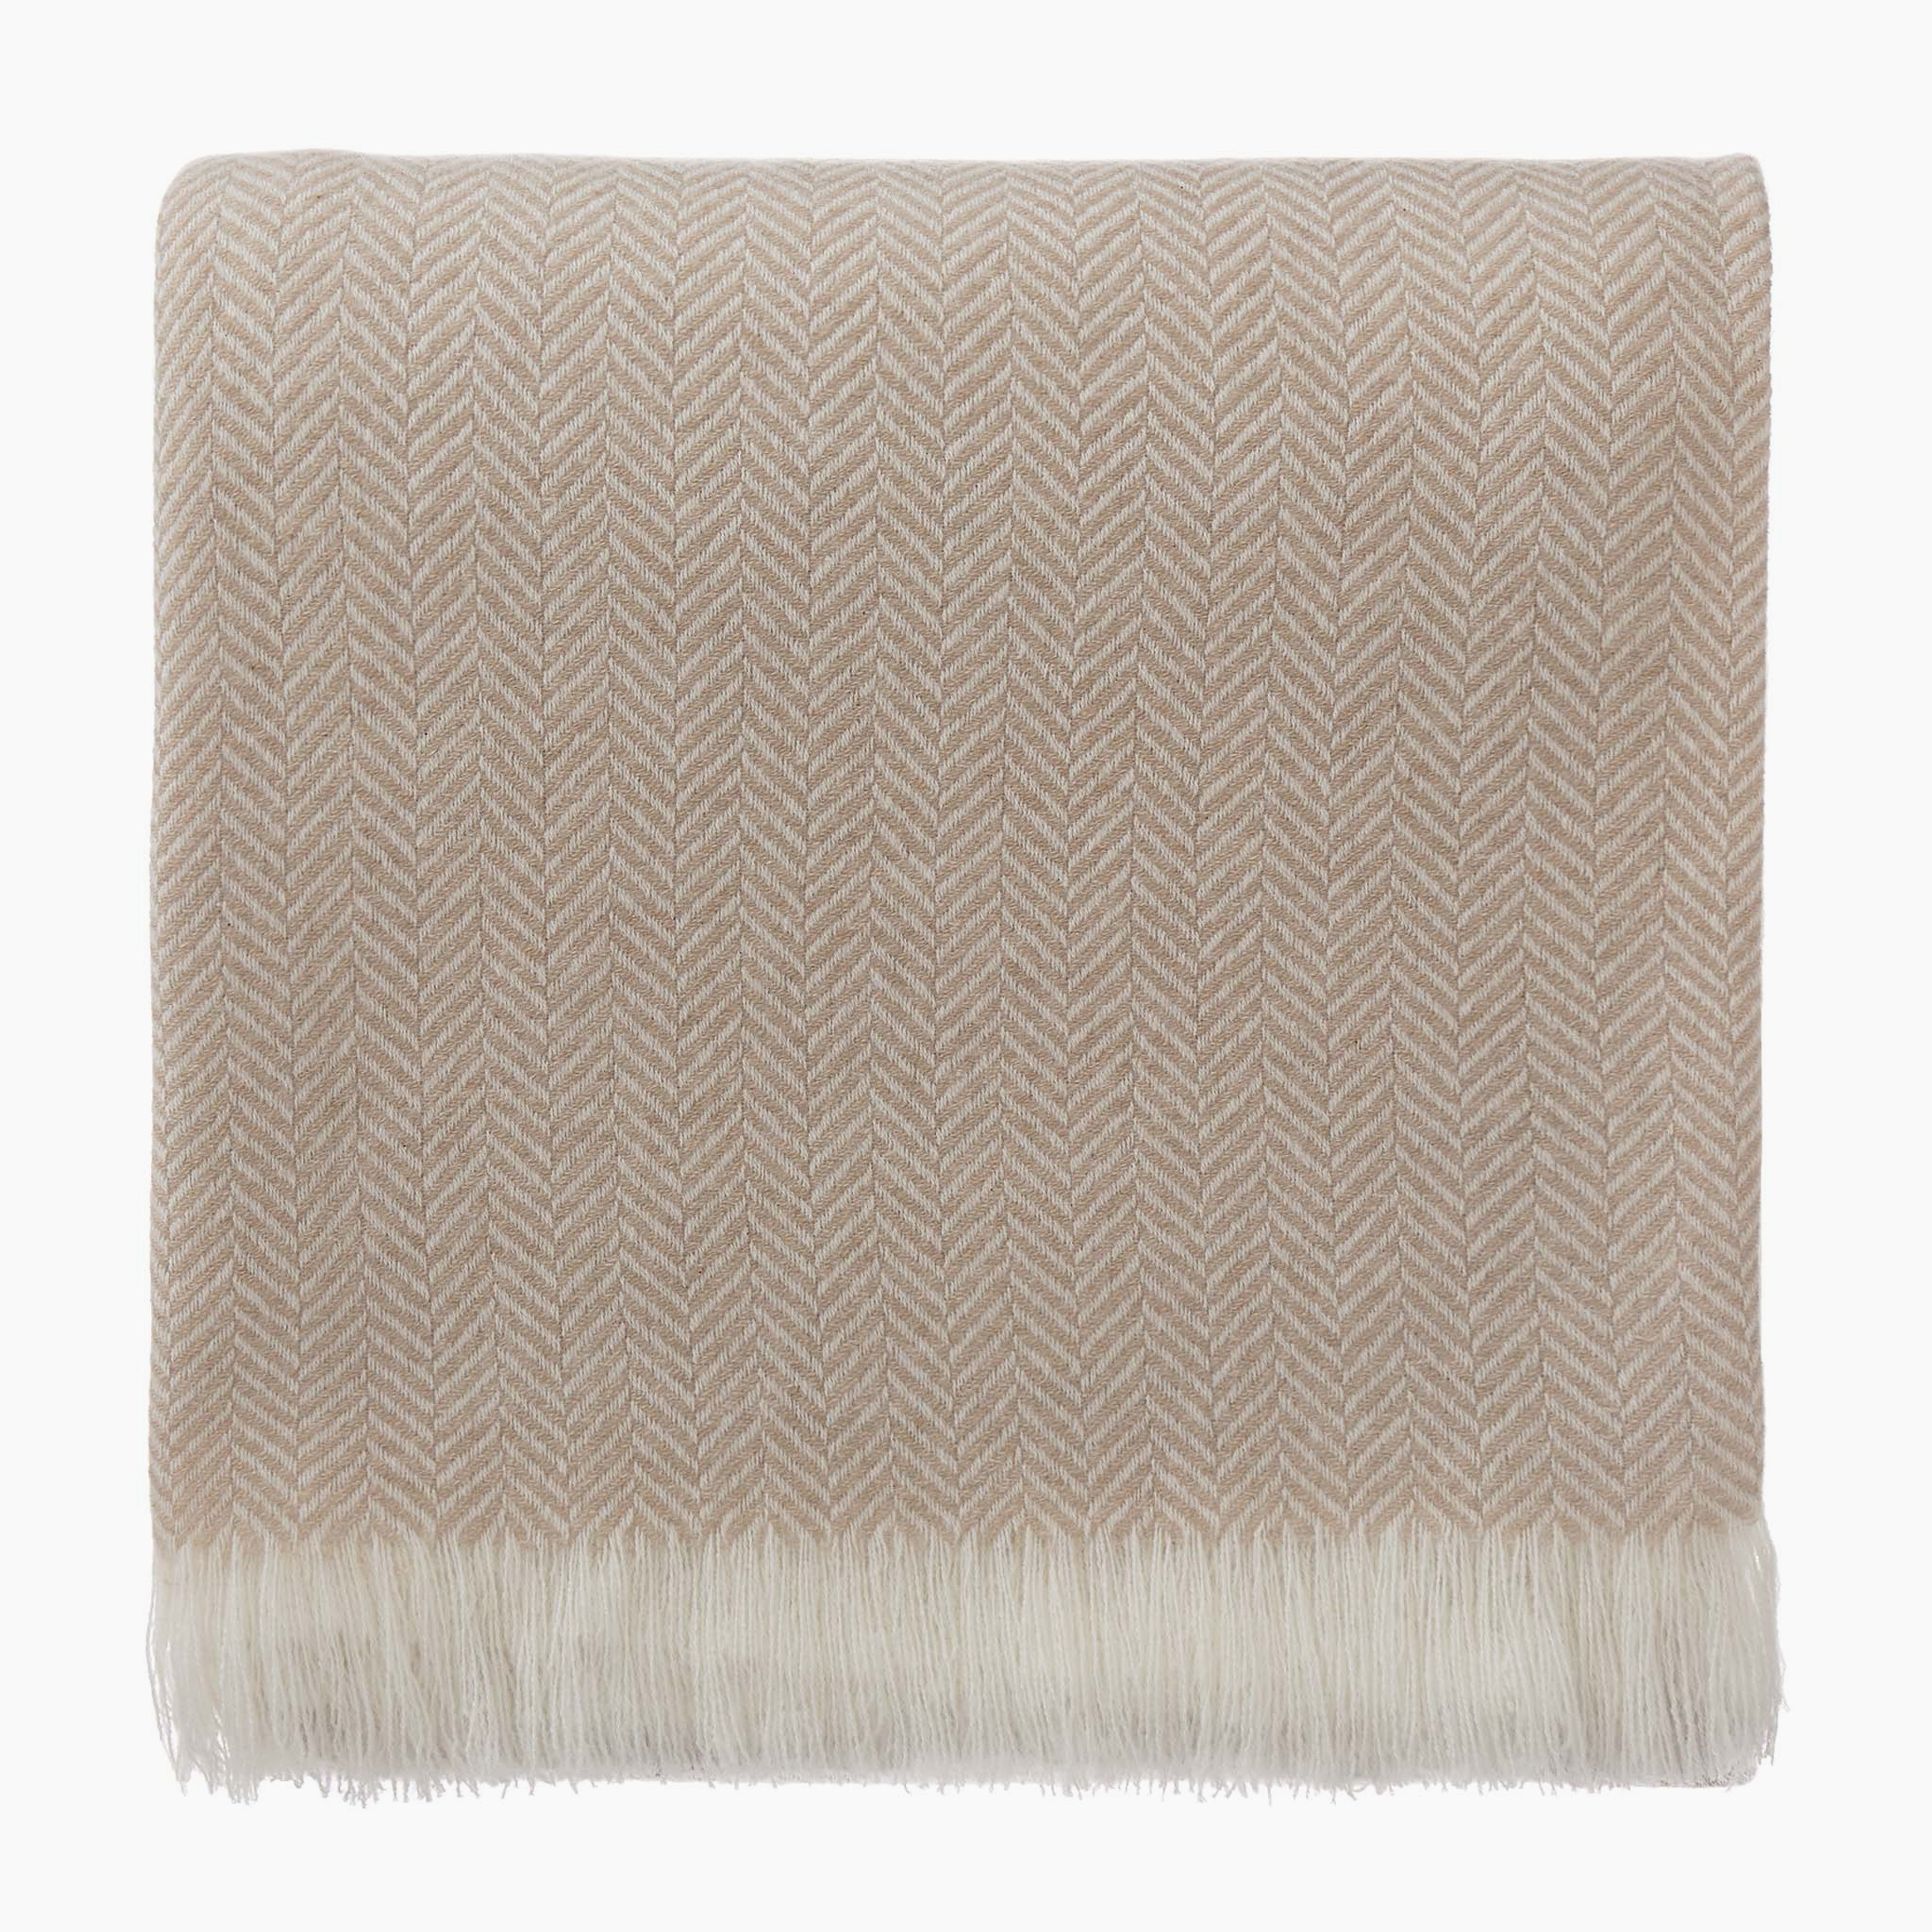 Nerva Cashmere Blanket [Beige/Cream]